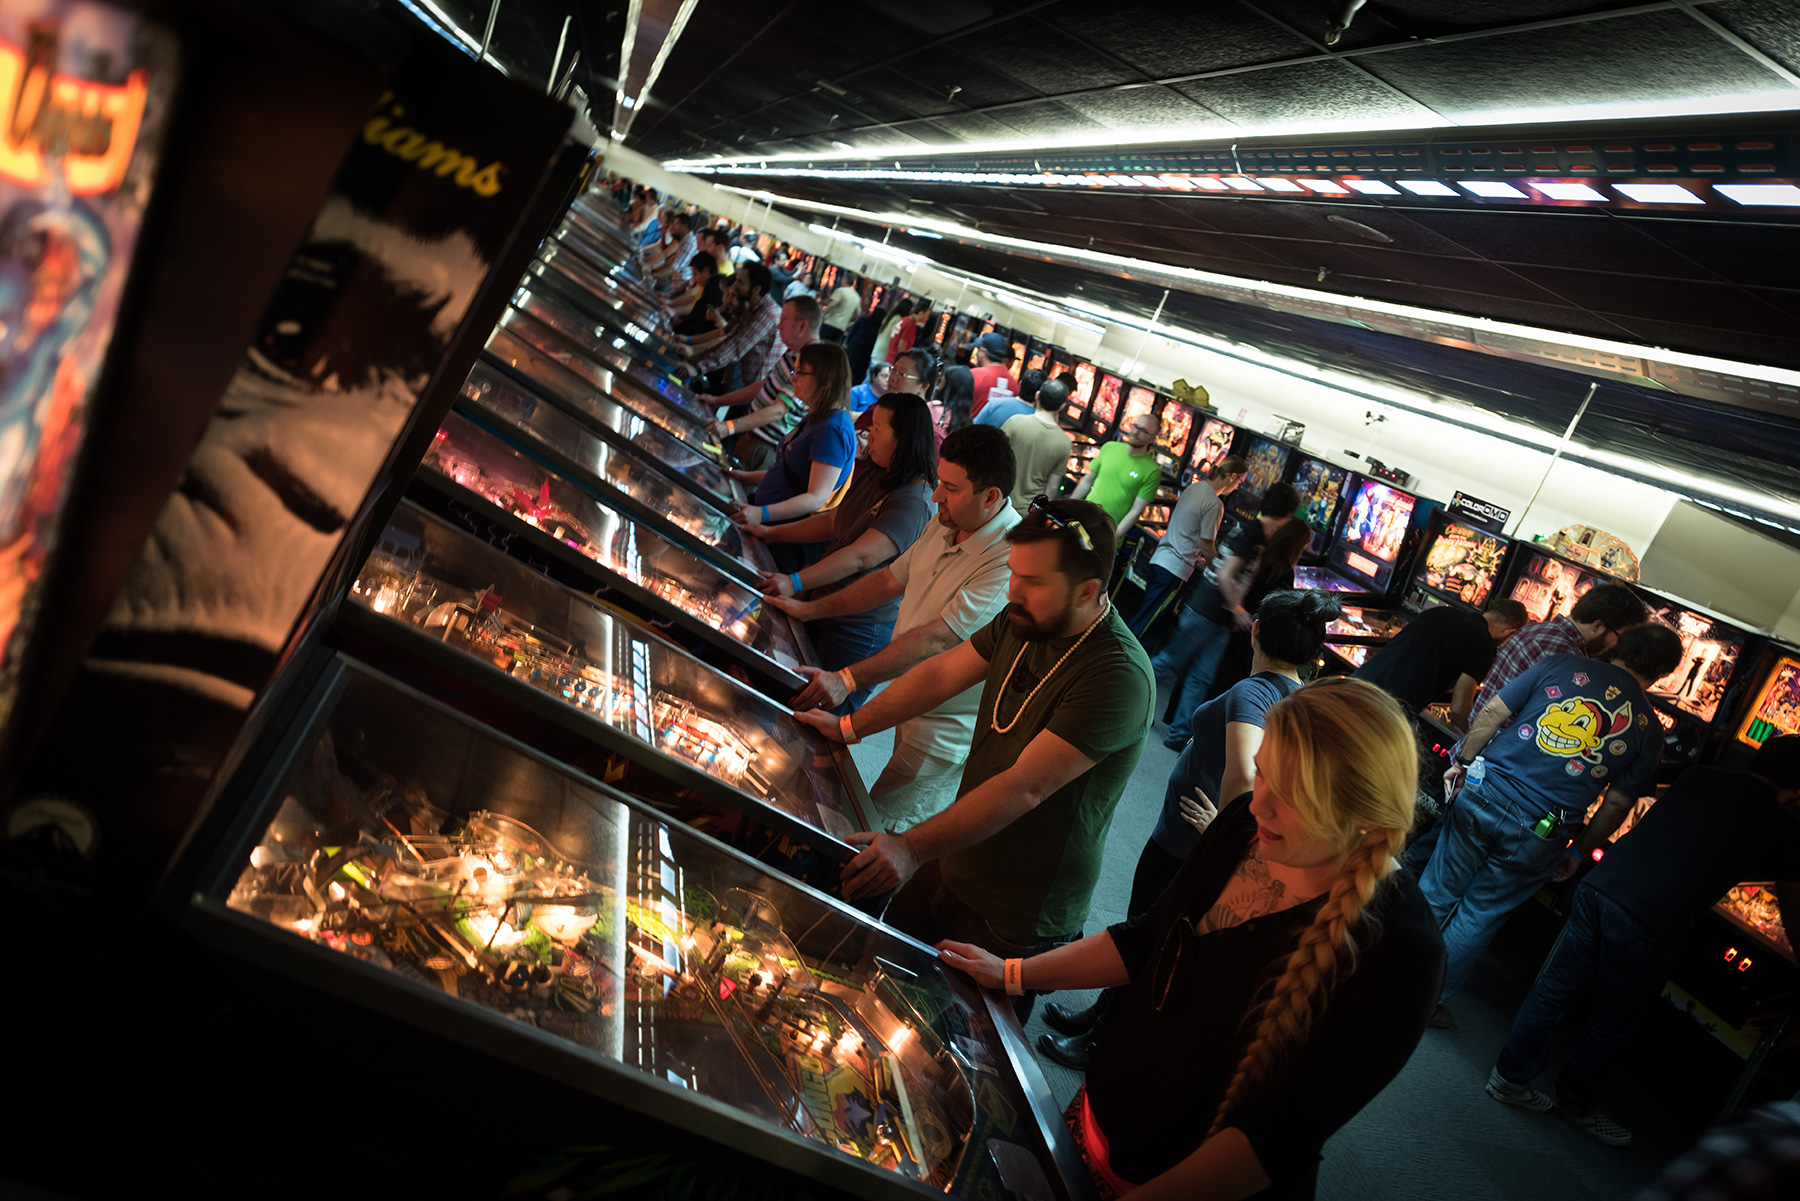 Ann Arbor to get pinball museum with Kickstarter funding - Polygon